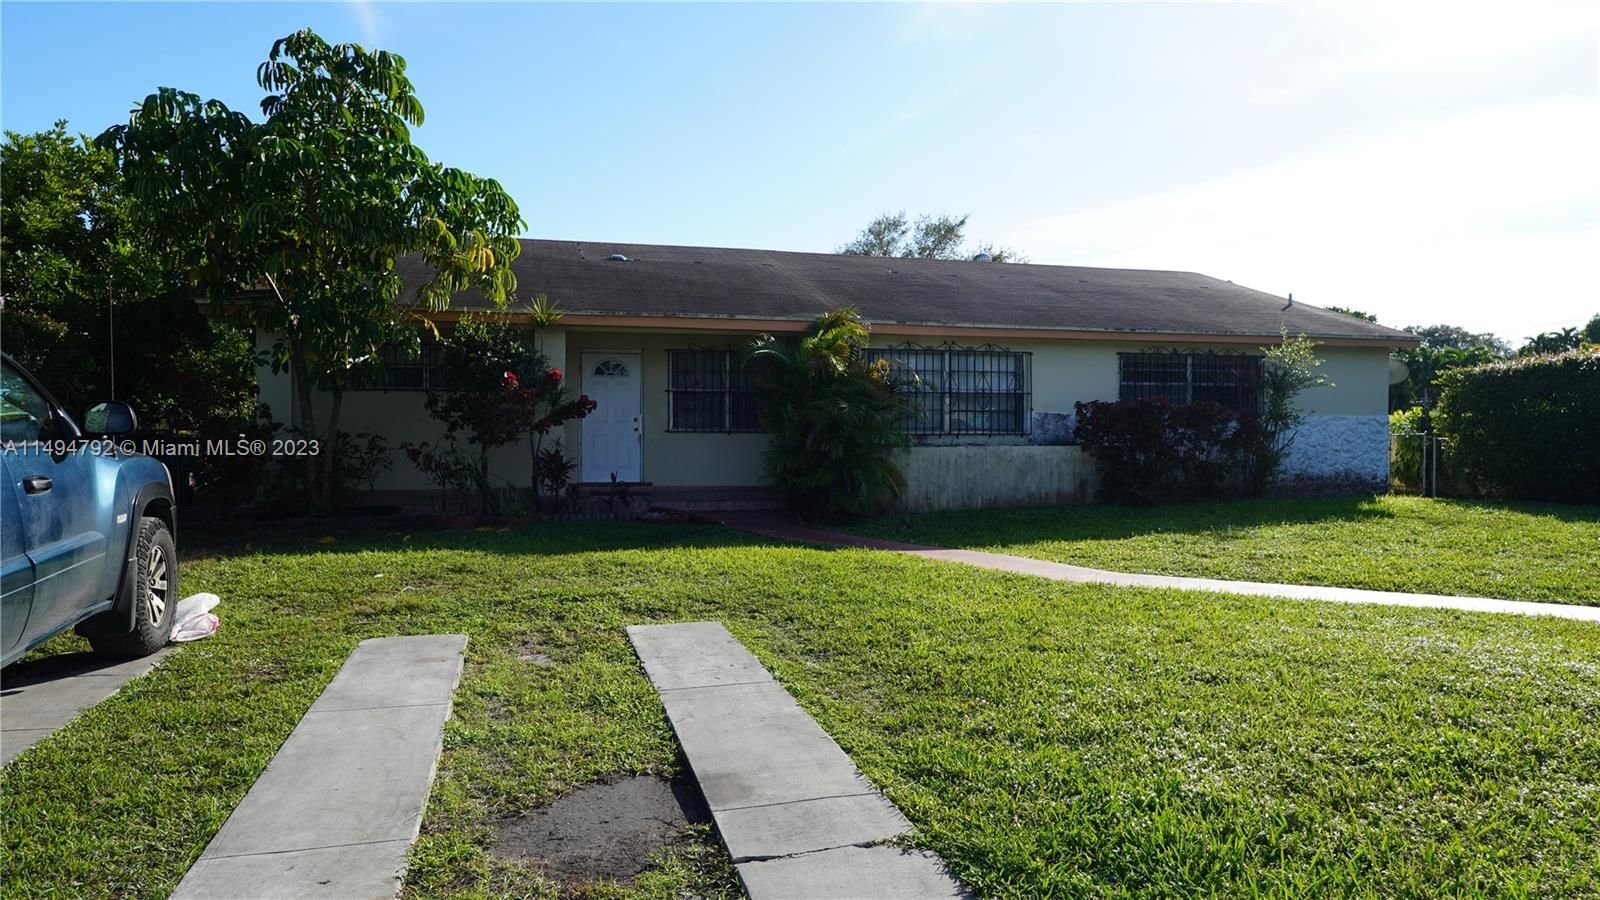 Real estate property located at 1750 147th St, Miami-Dade County, ARCH CREEKS ESTATES, Miami, FL